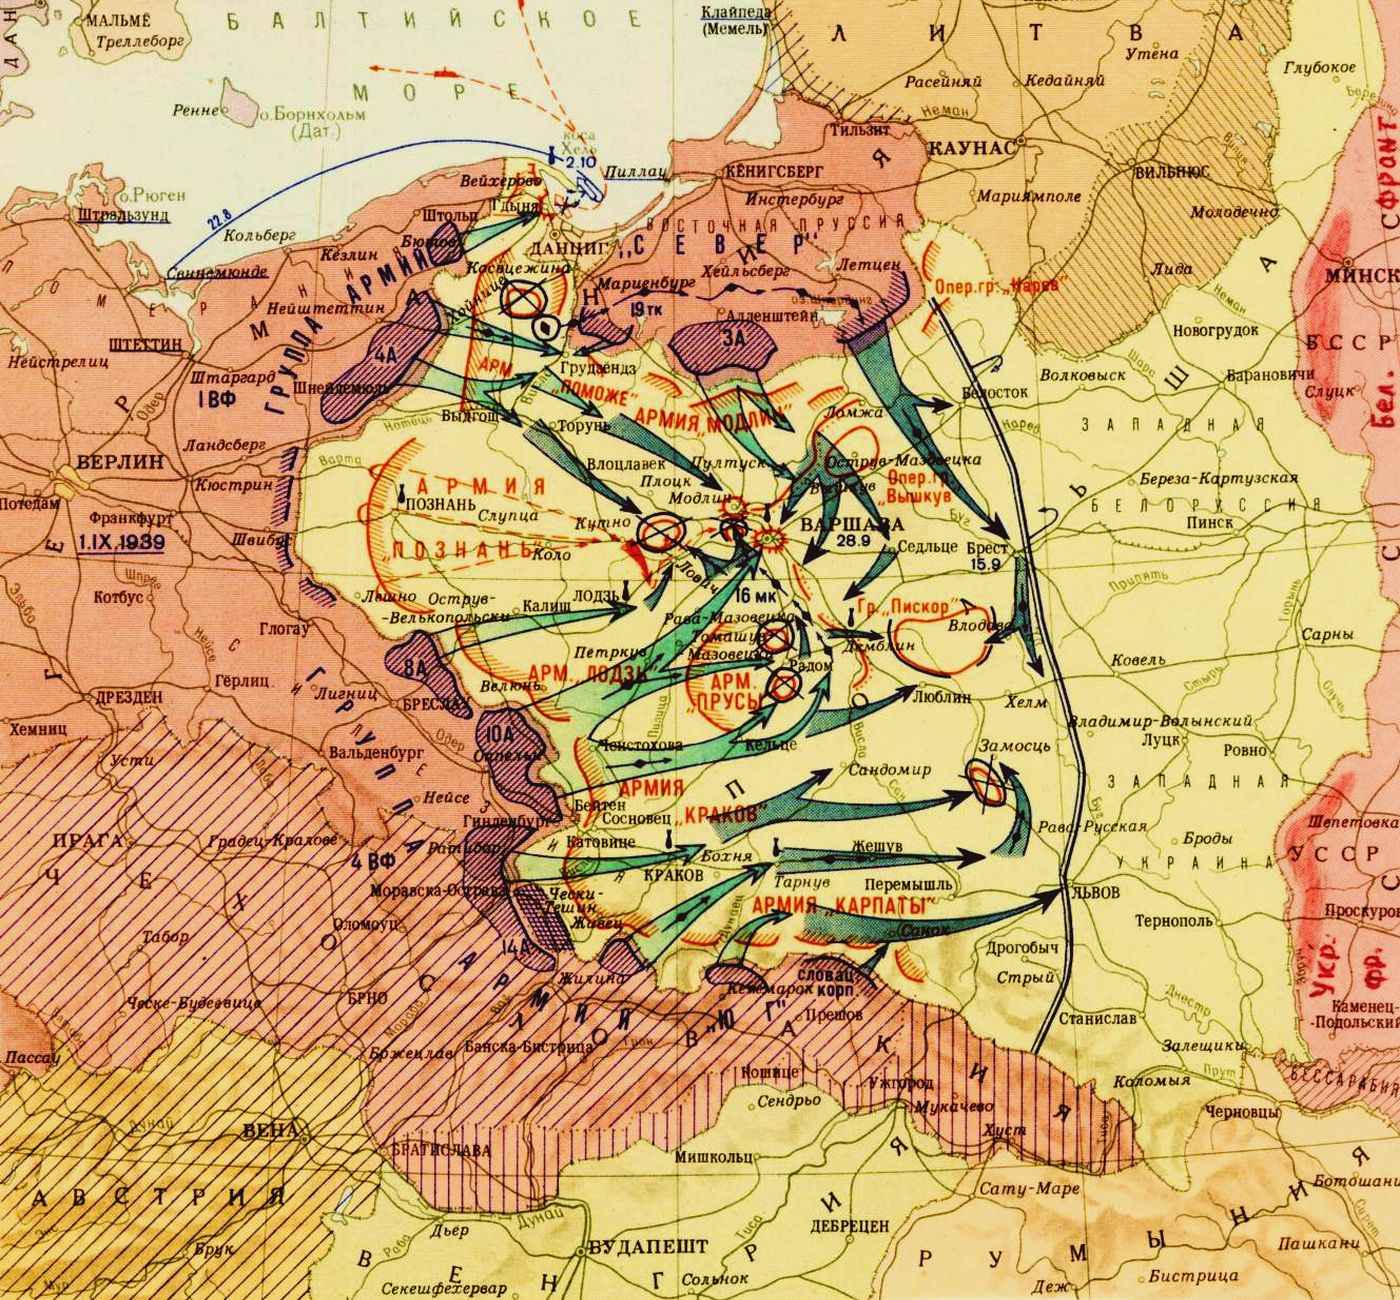 Западные планы войны с ссср. Польская кампания вермахта 1939 карта. Карта второй мировой войны 1939 Германии. Карта захвата Польши Германией 1939. Карта нападения Германии на Польшу 1939 год.